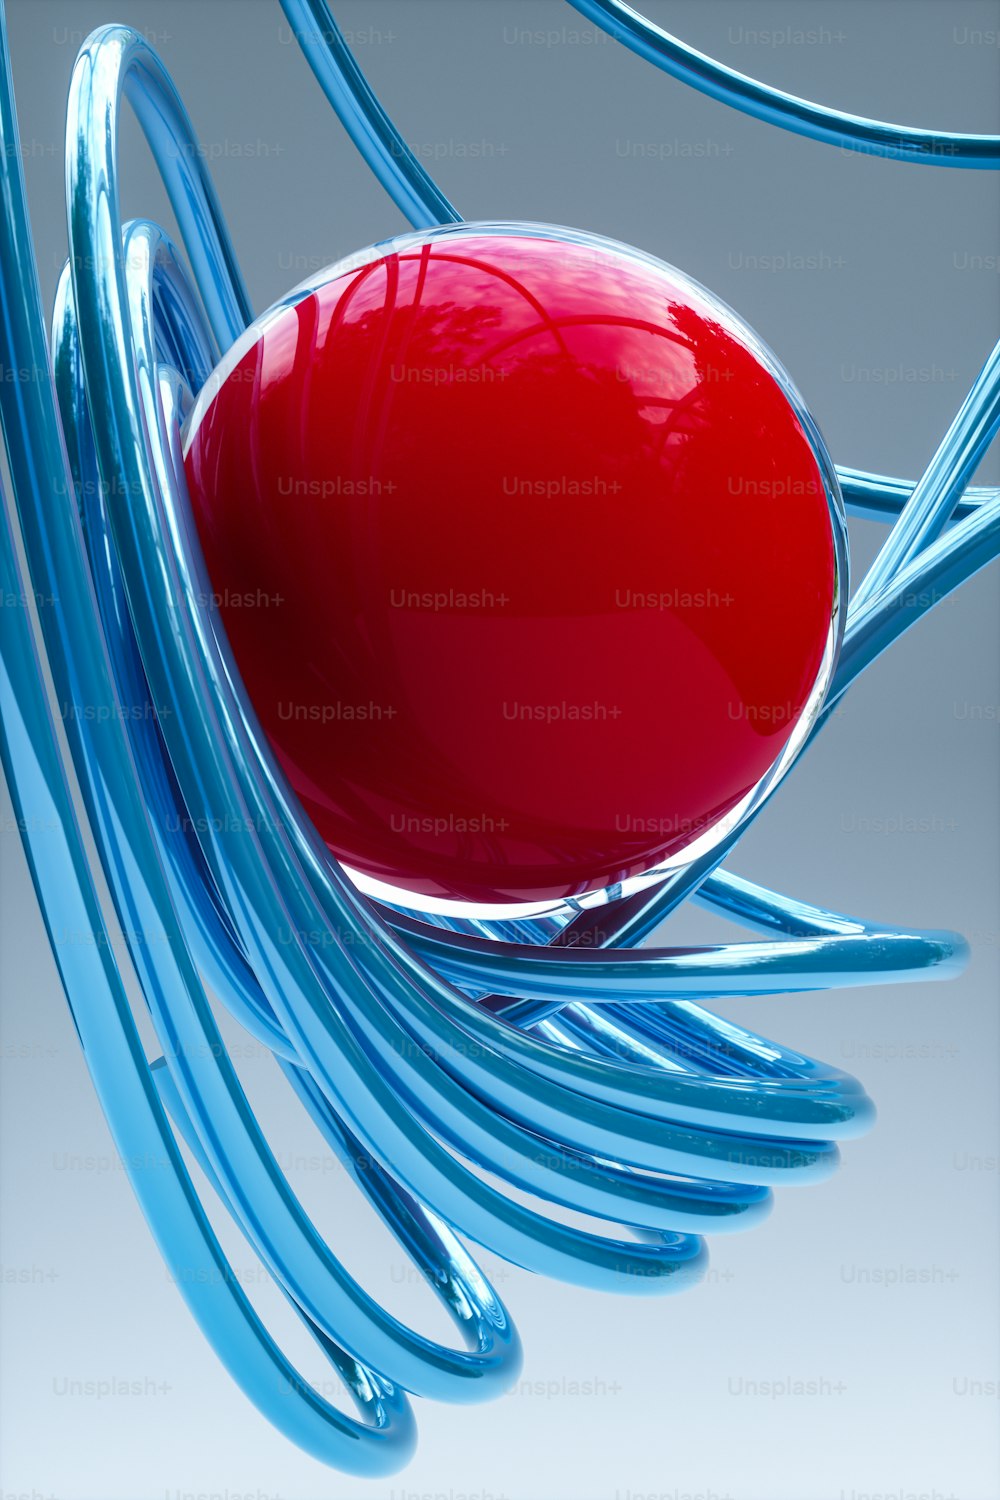 un objet rouge assis sur un objet bleu